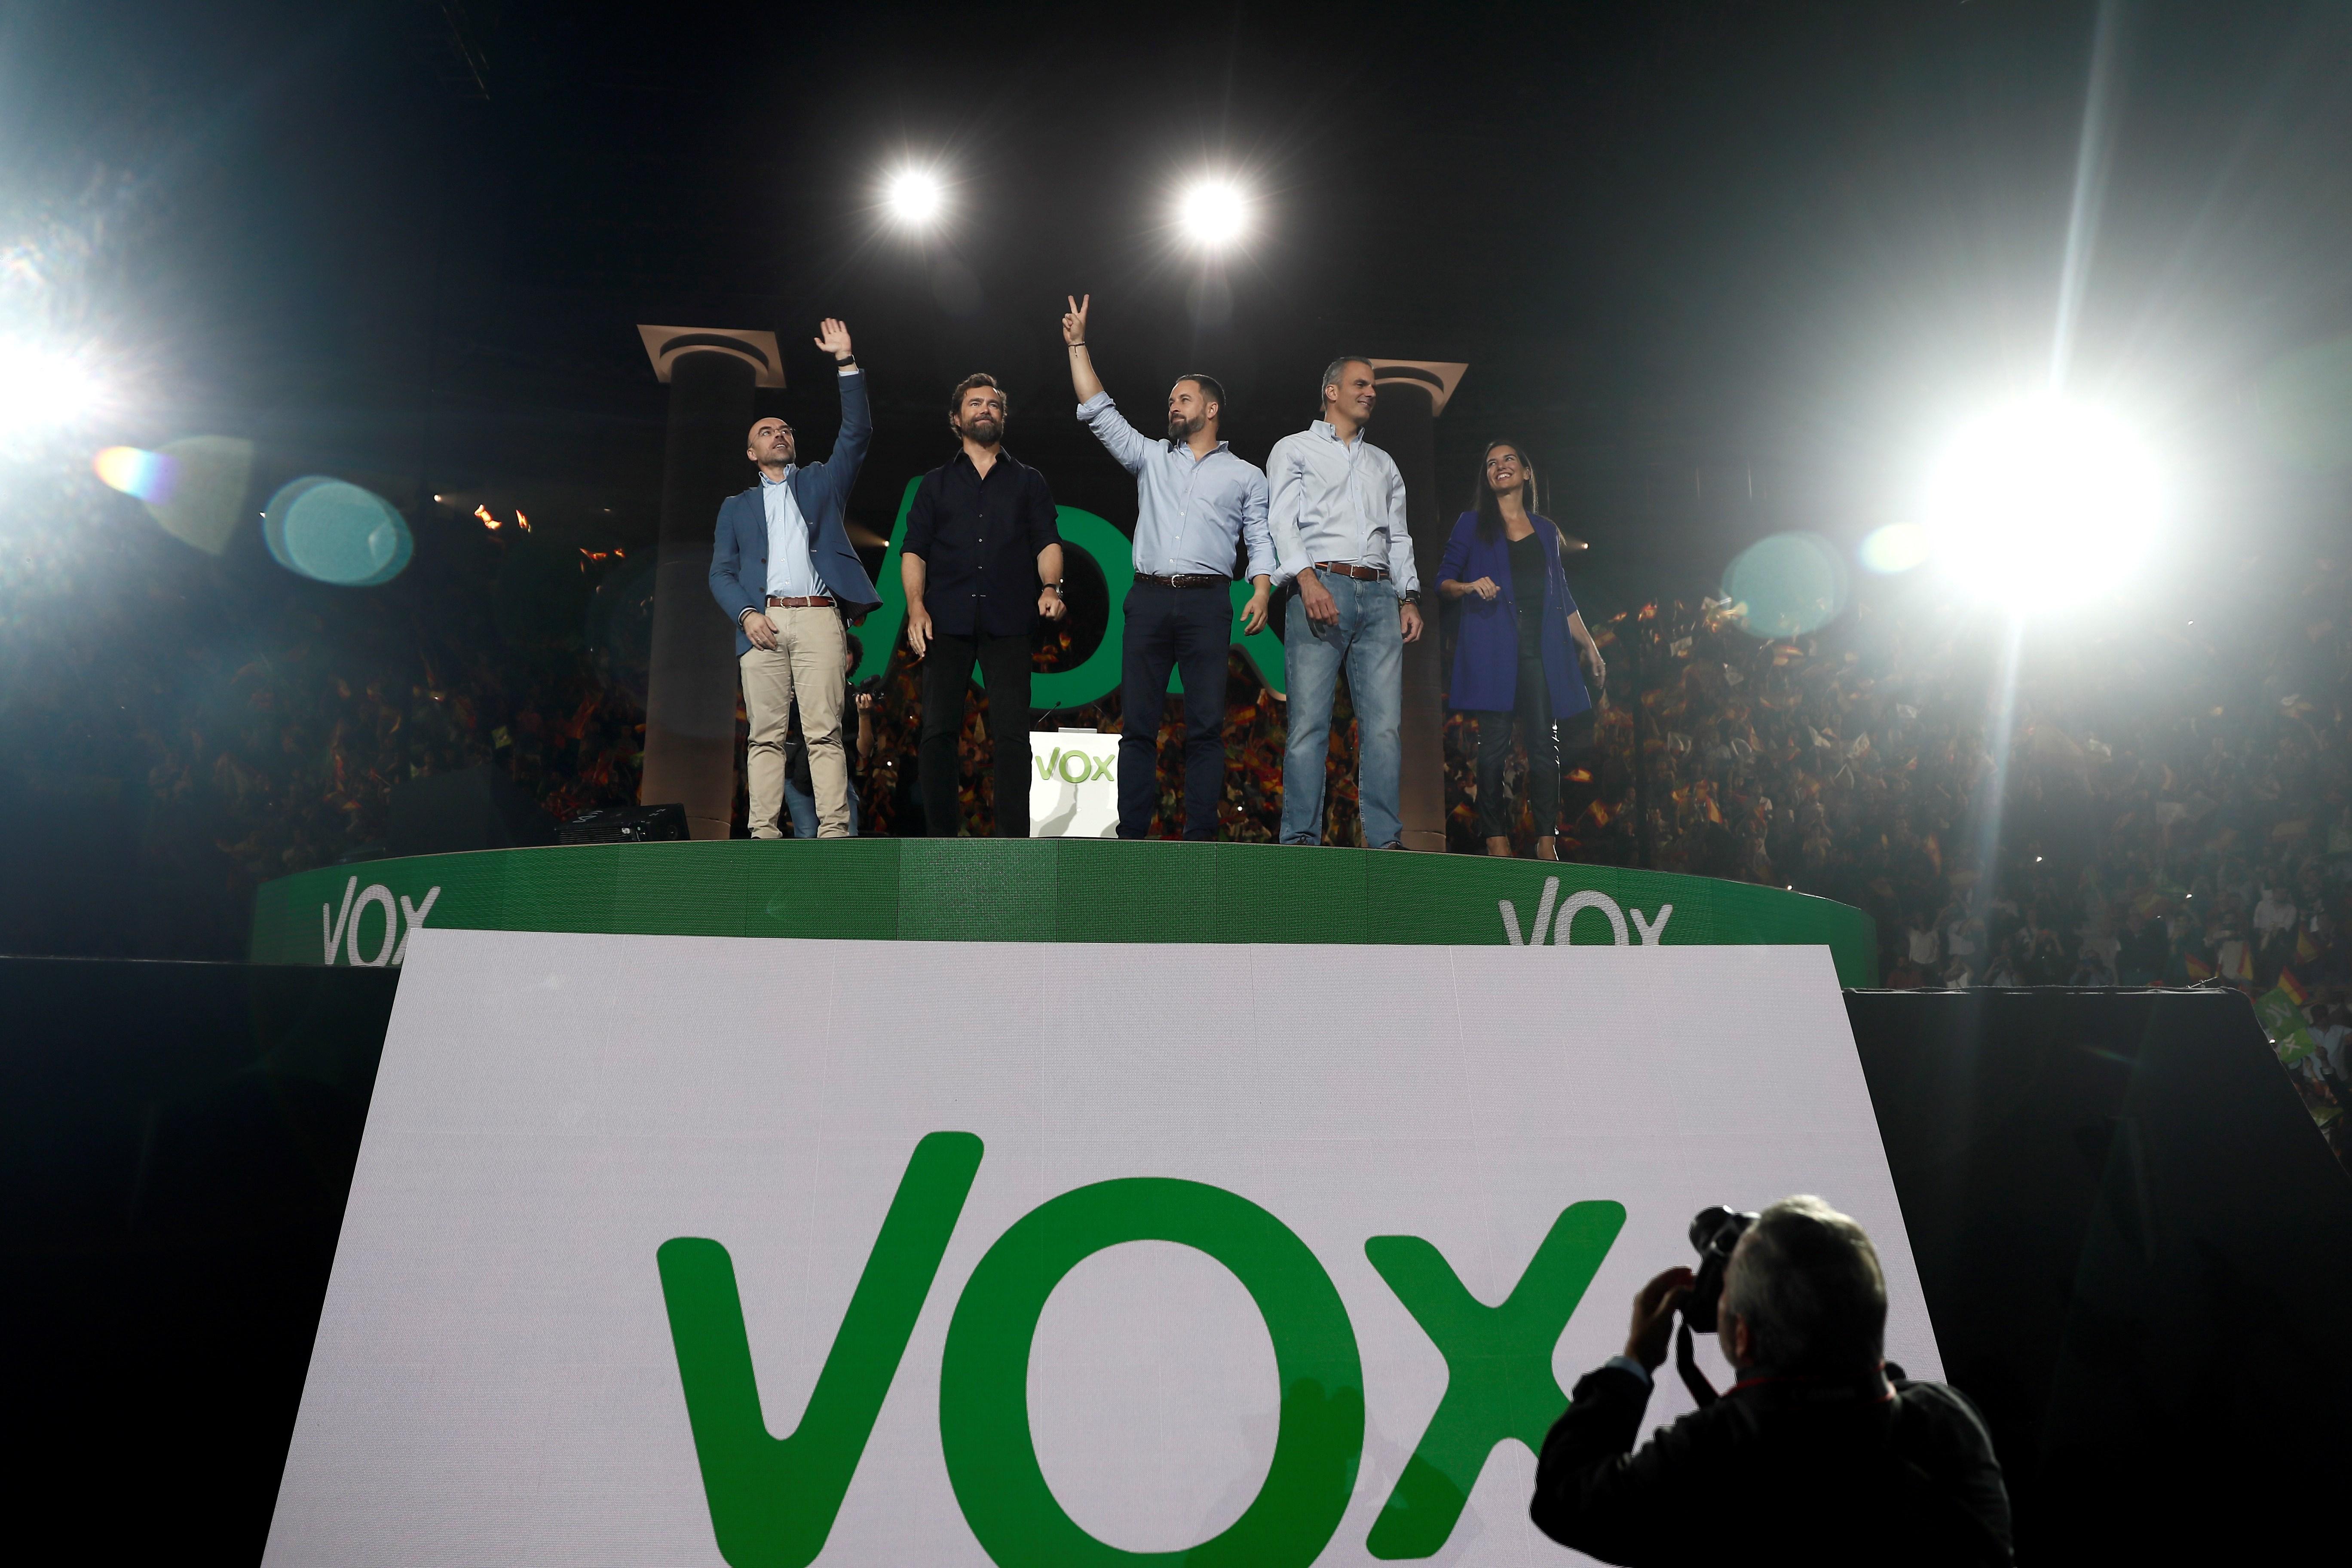 VÍDEO | Vox utilitza una cançó que amenaça Puigdemont